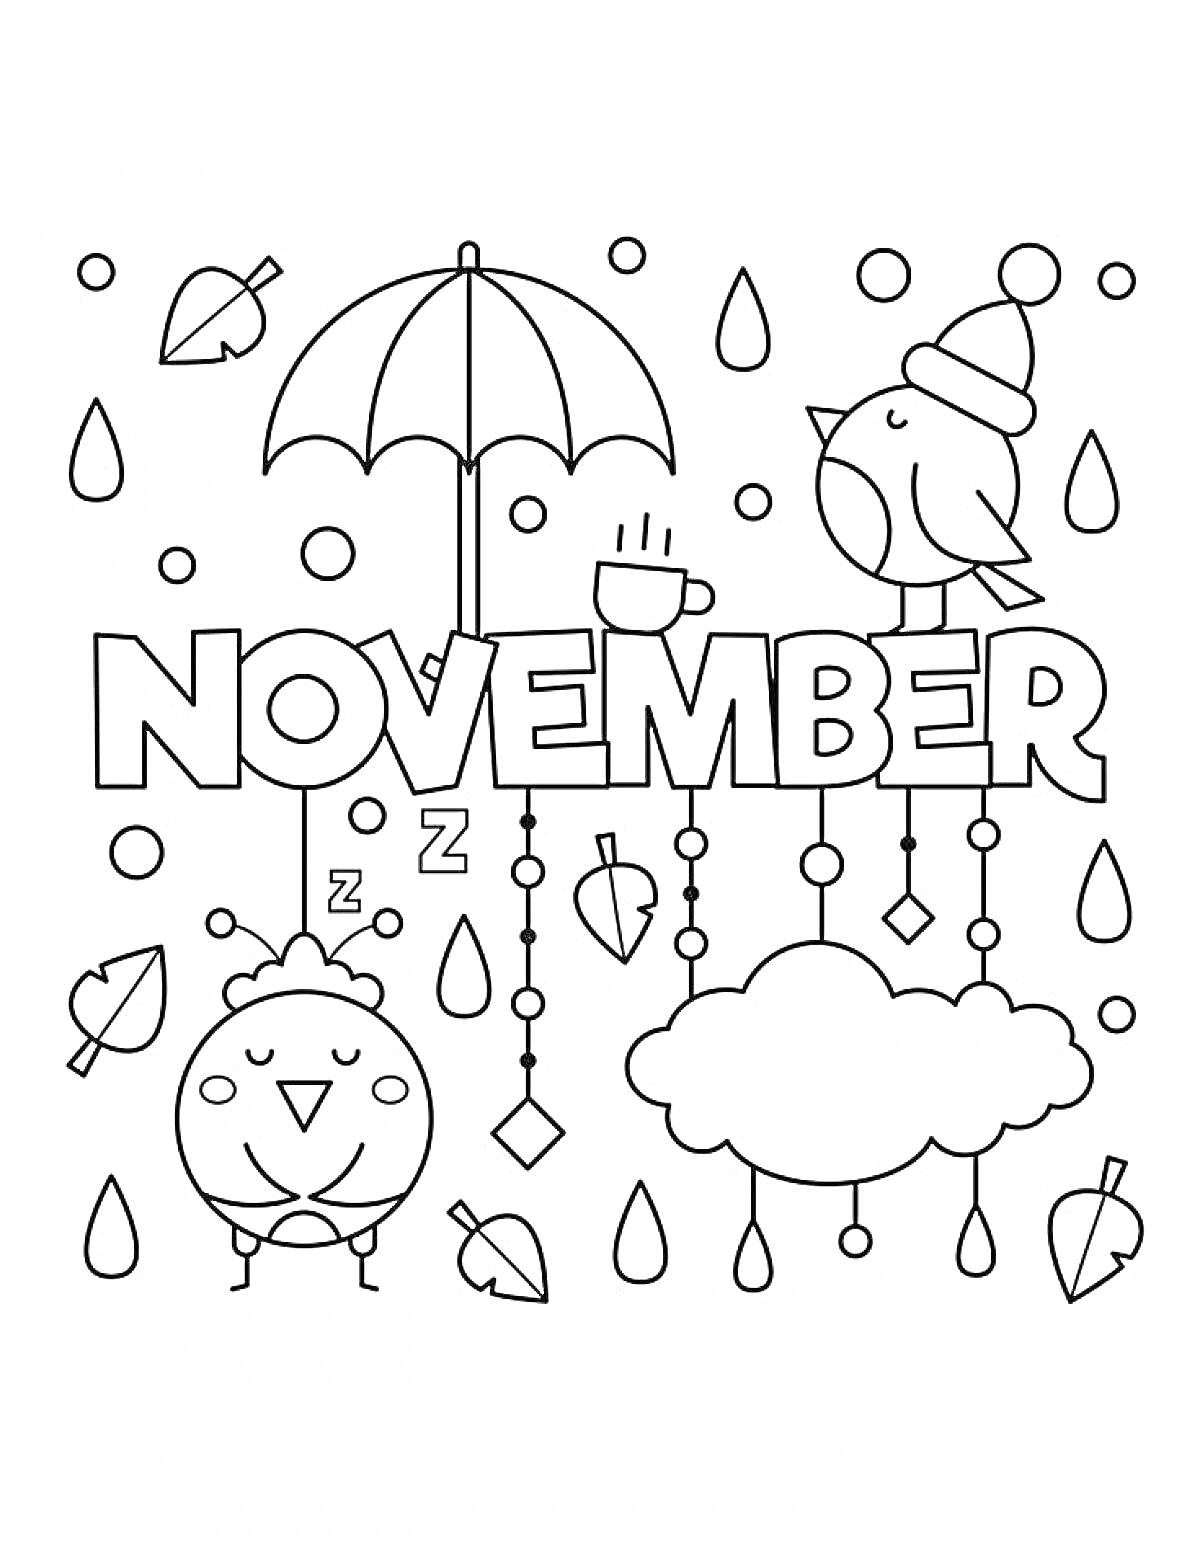 Ноябрь с двумя птицами (спящей и бодрствующей), зонтом, облаком, кружкой кофе, каплями дождя и листьями.